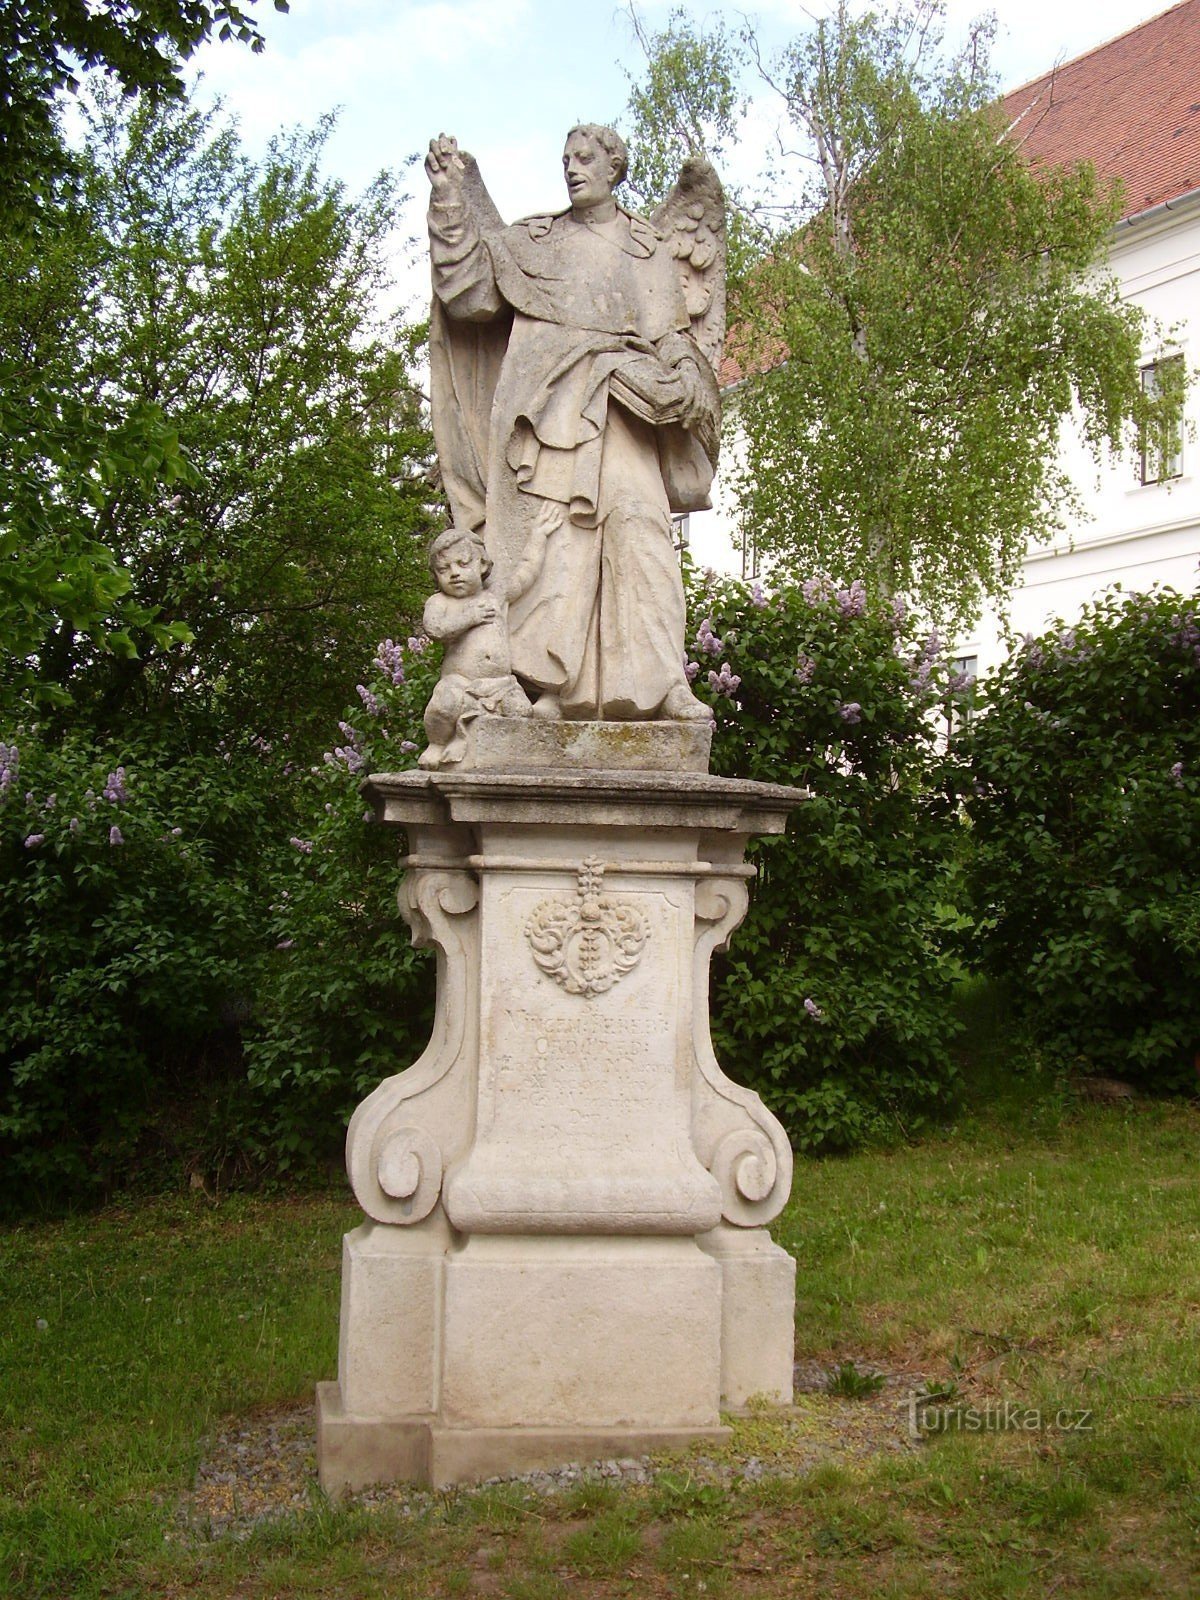 Kip sv. Vincenzo Ferrerský u Rosicama kod Brna